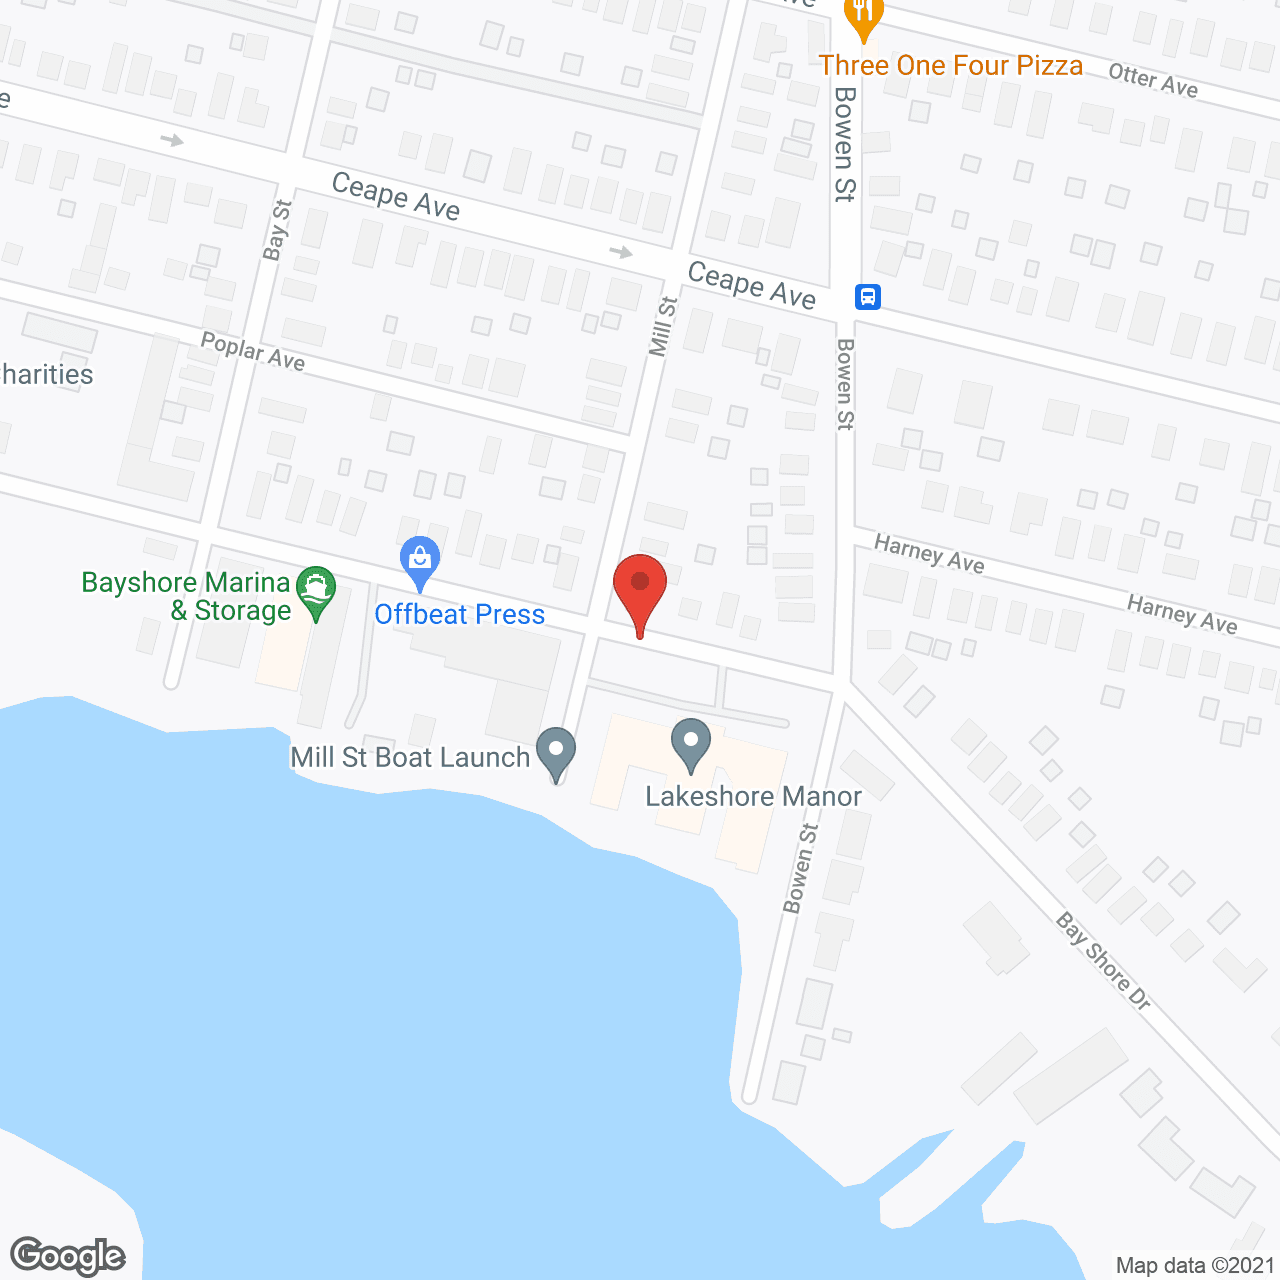 Lakeshore Manor in google map